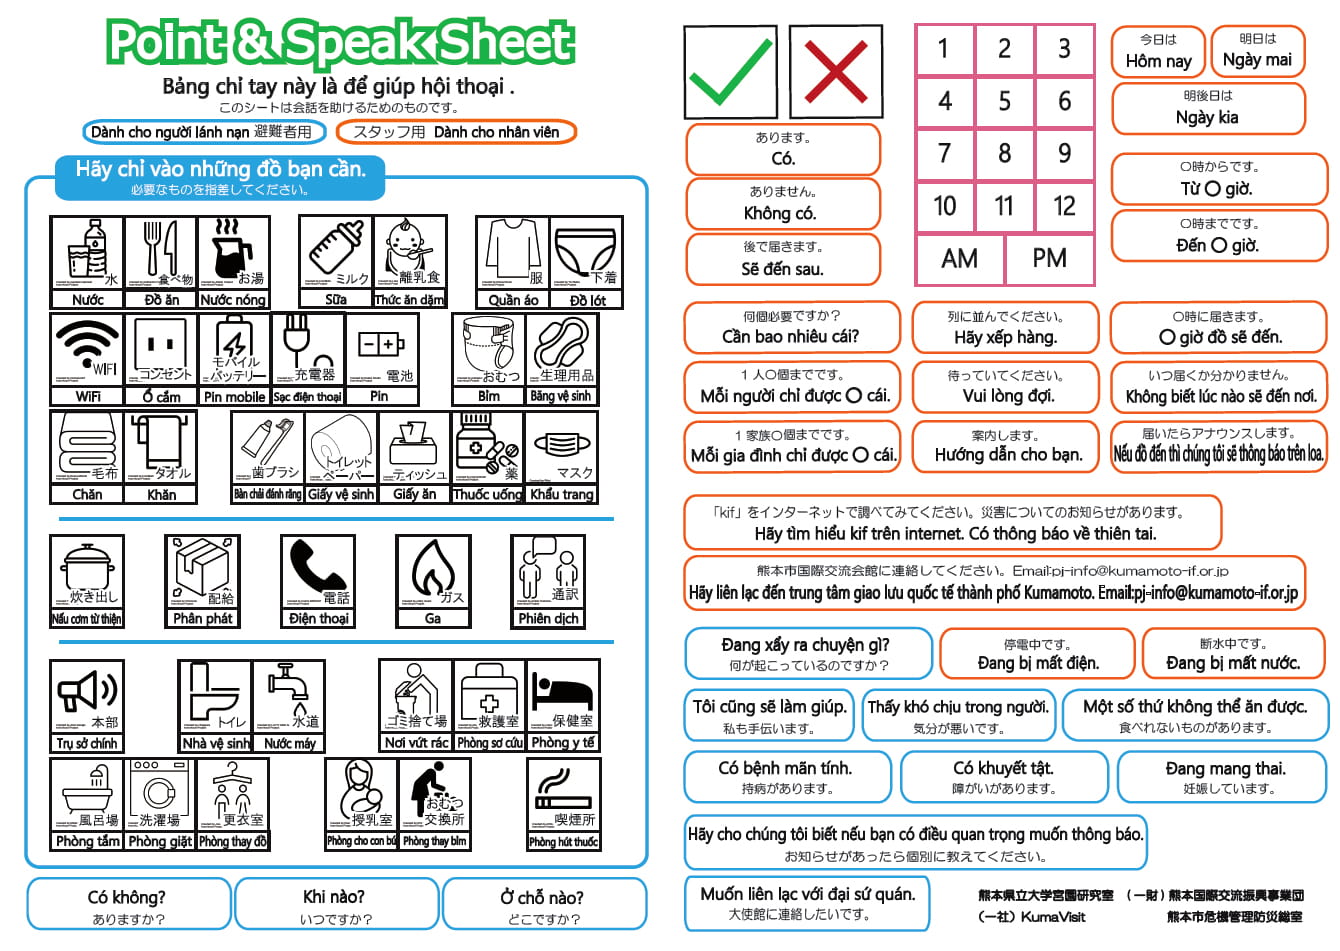 Point & Speak Sheet in Vietnamese